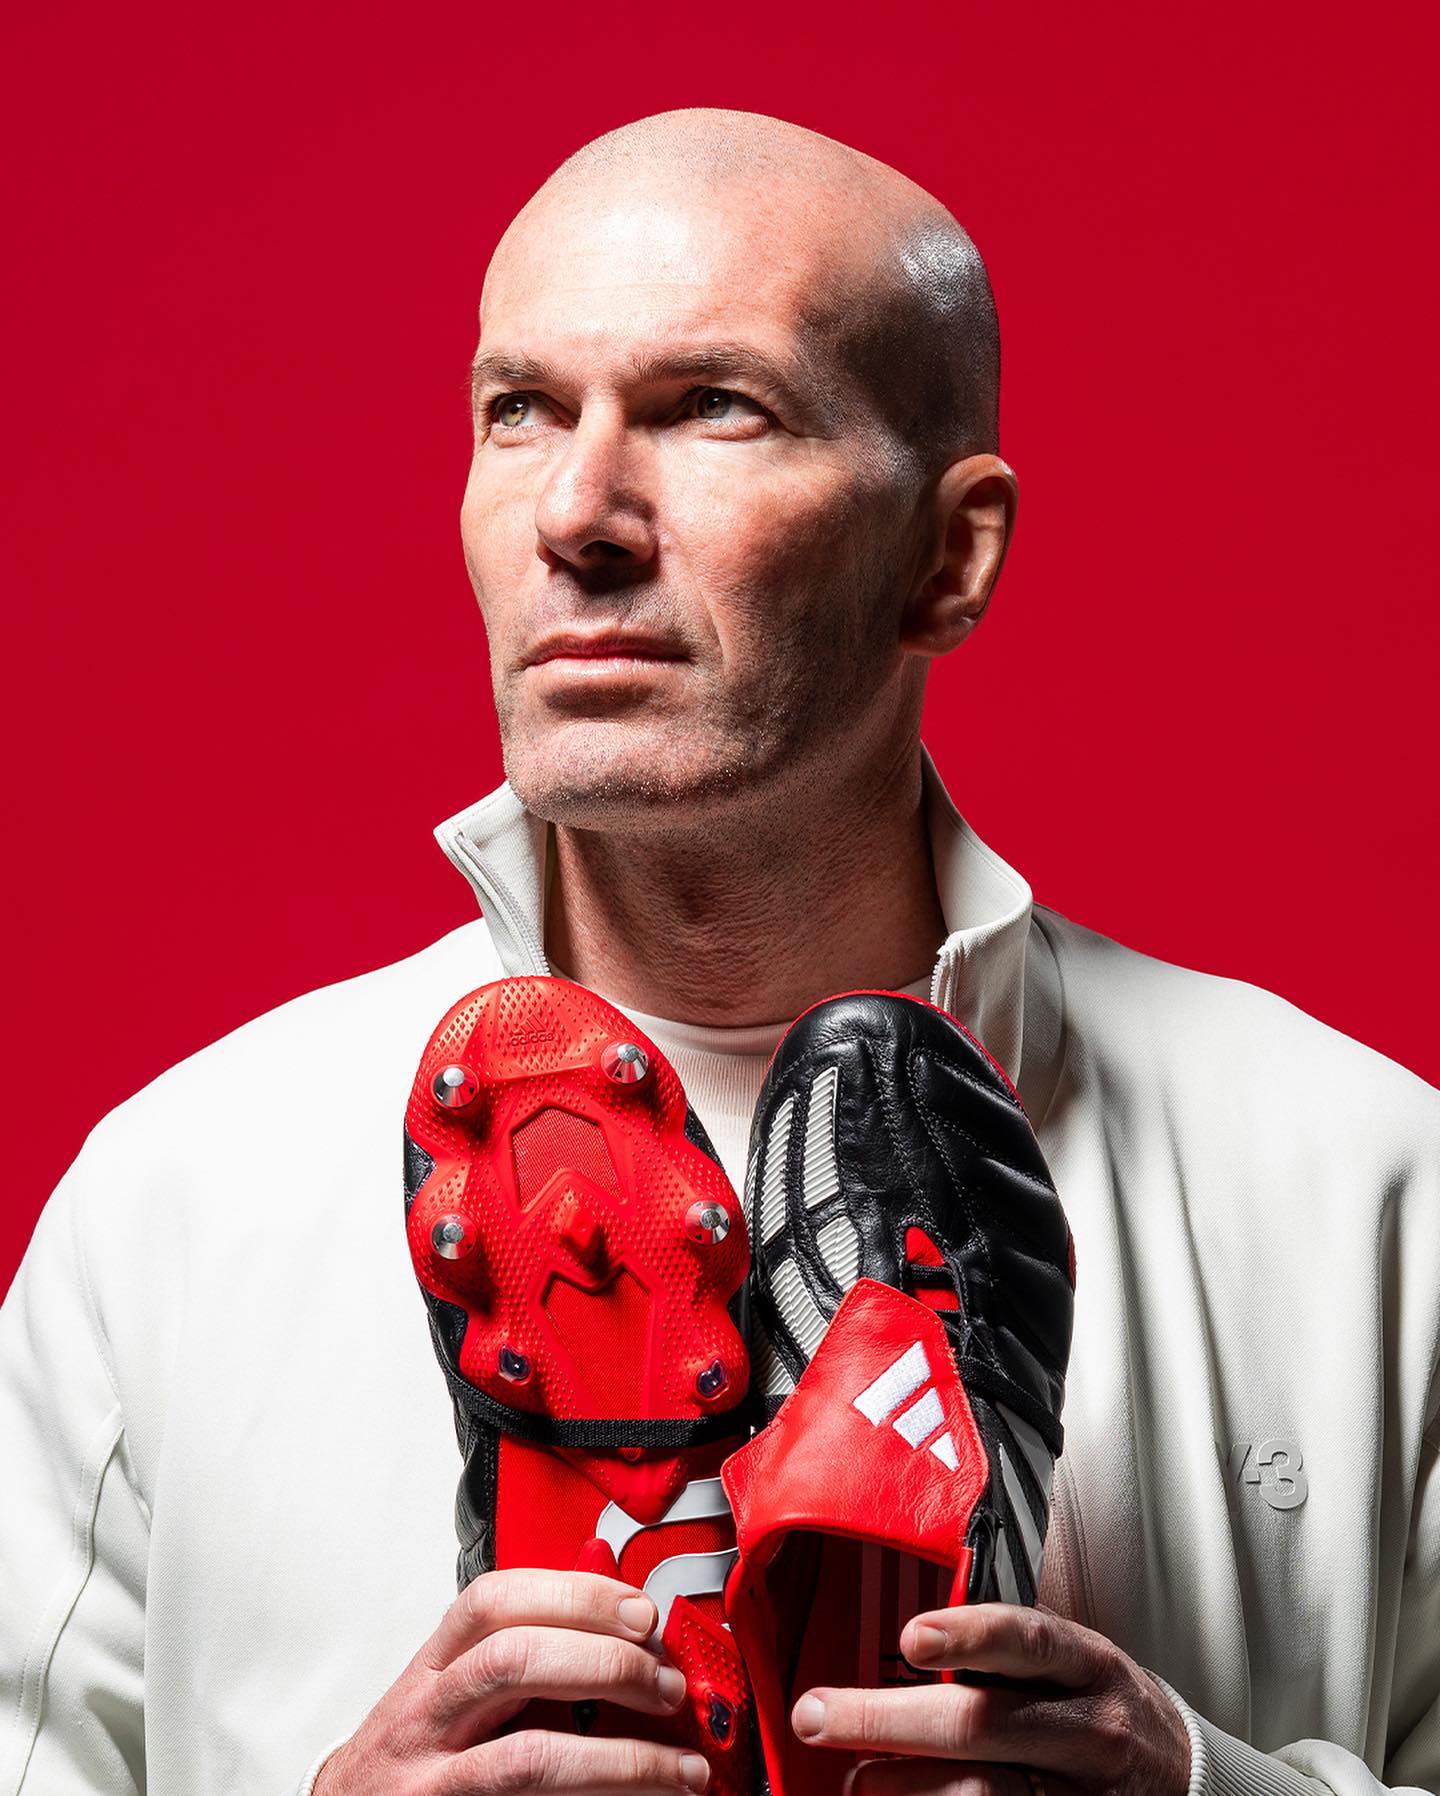 Tributo a Zidane: Adidas las Predator 20 años después - UNANIMO Deportes